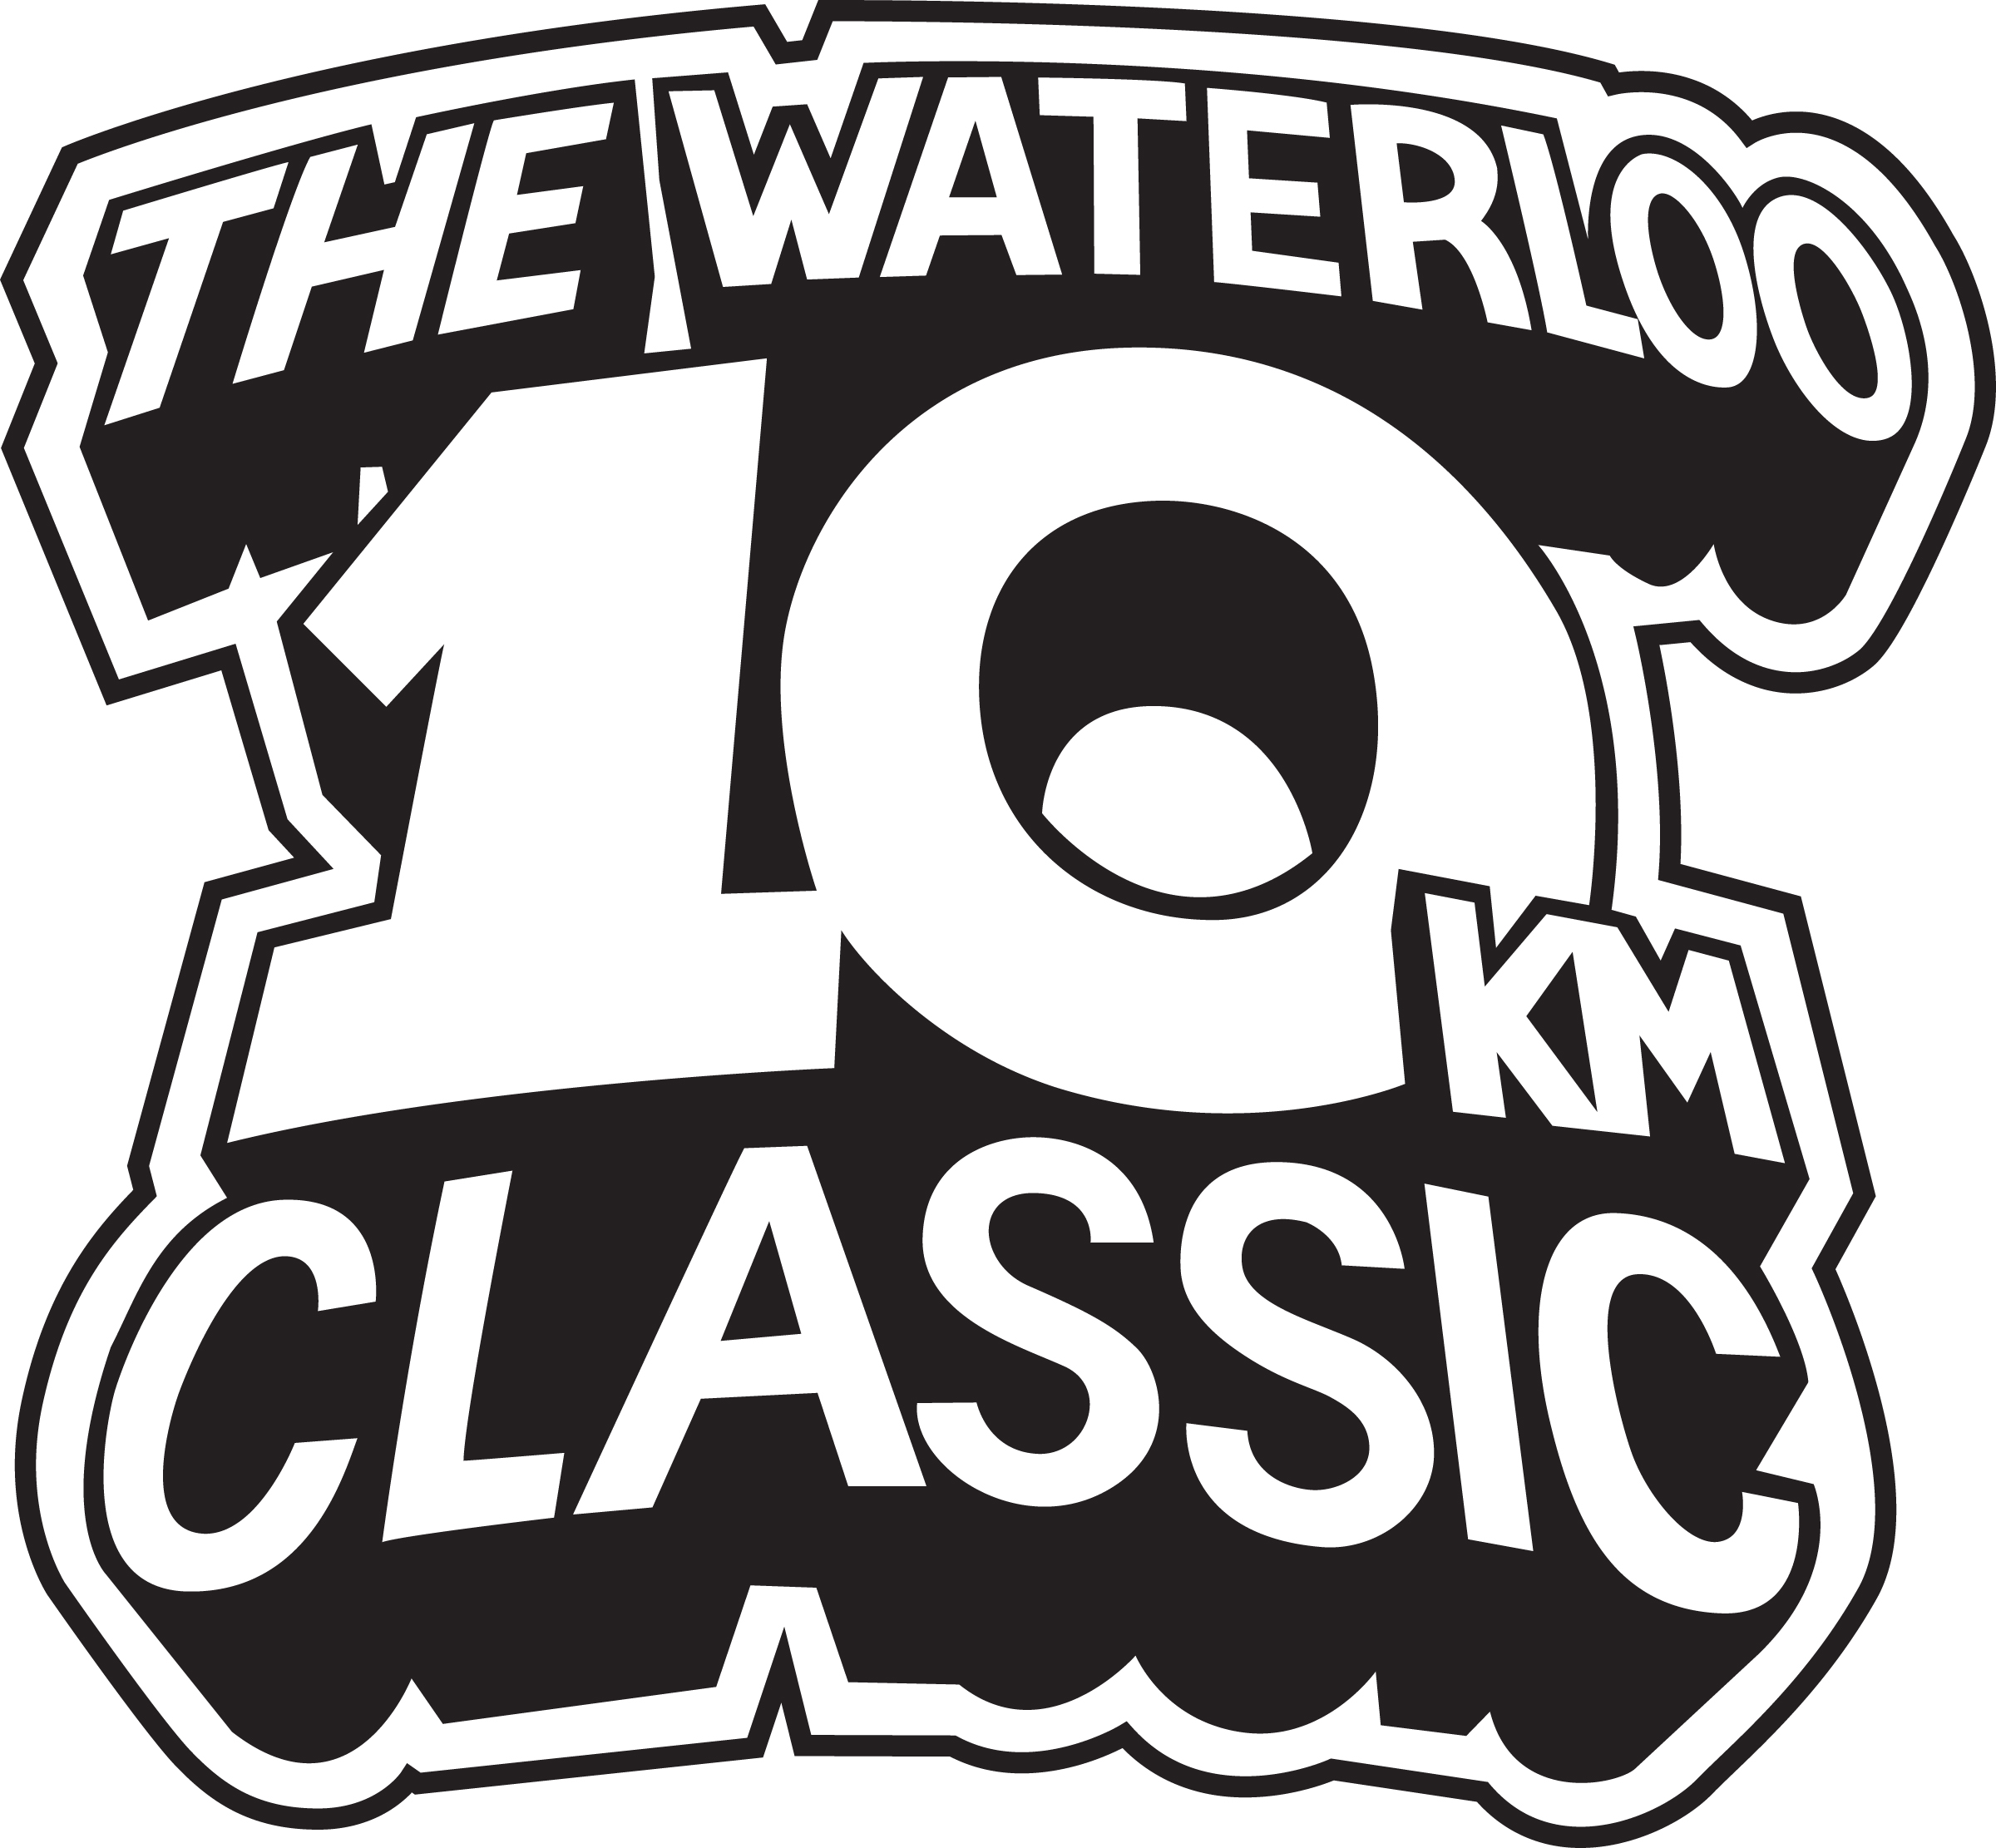 Waterloo10kmClassicLogoLg